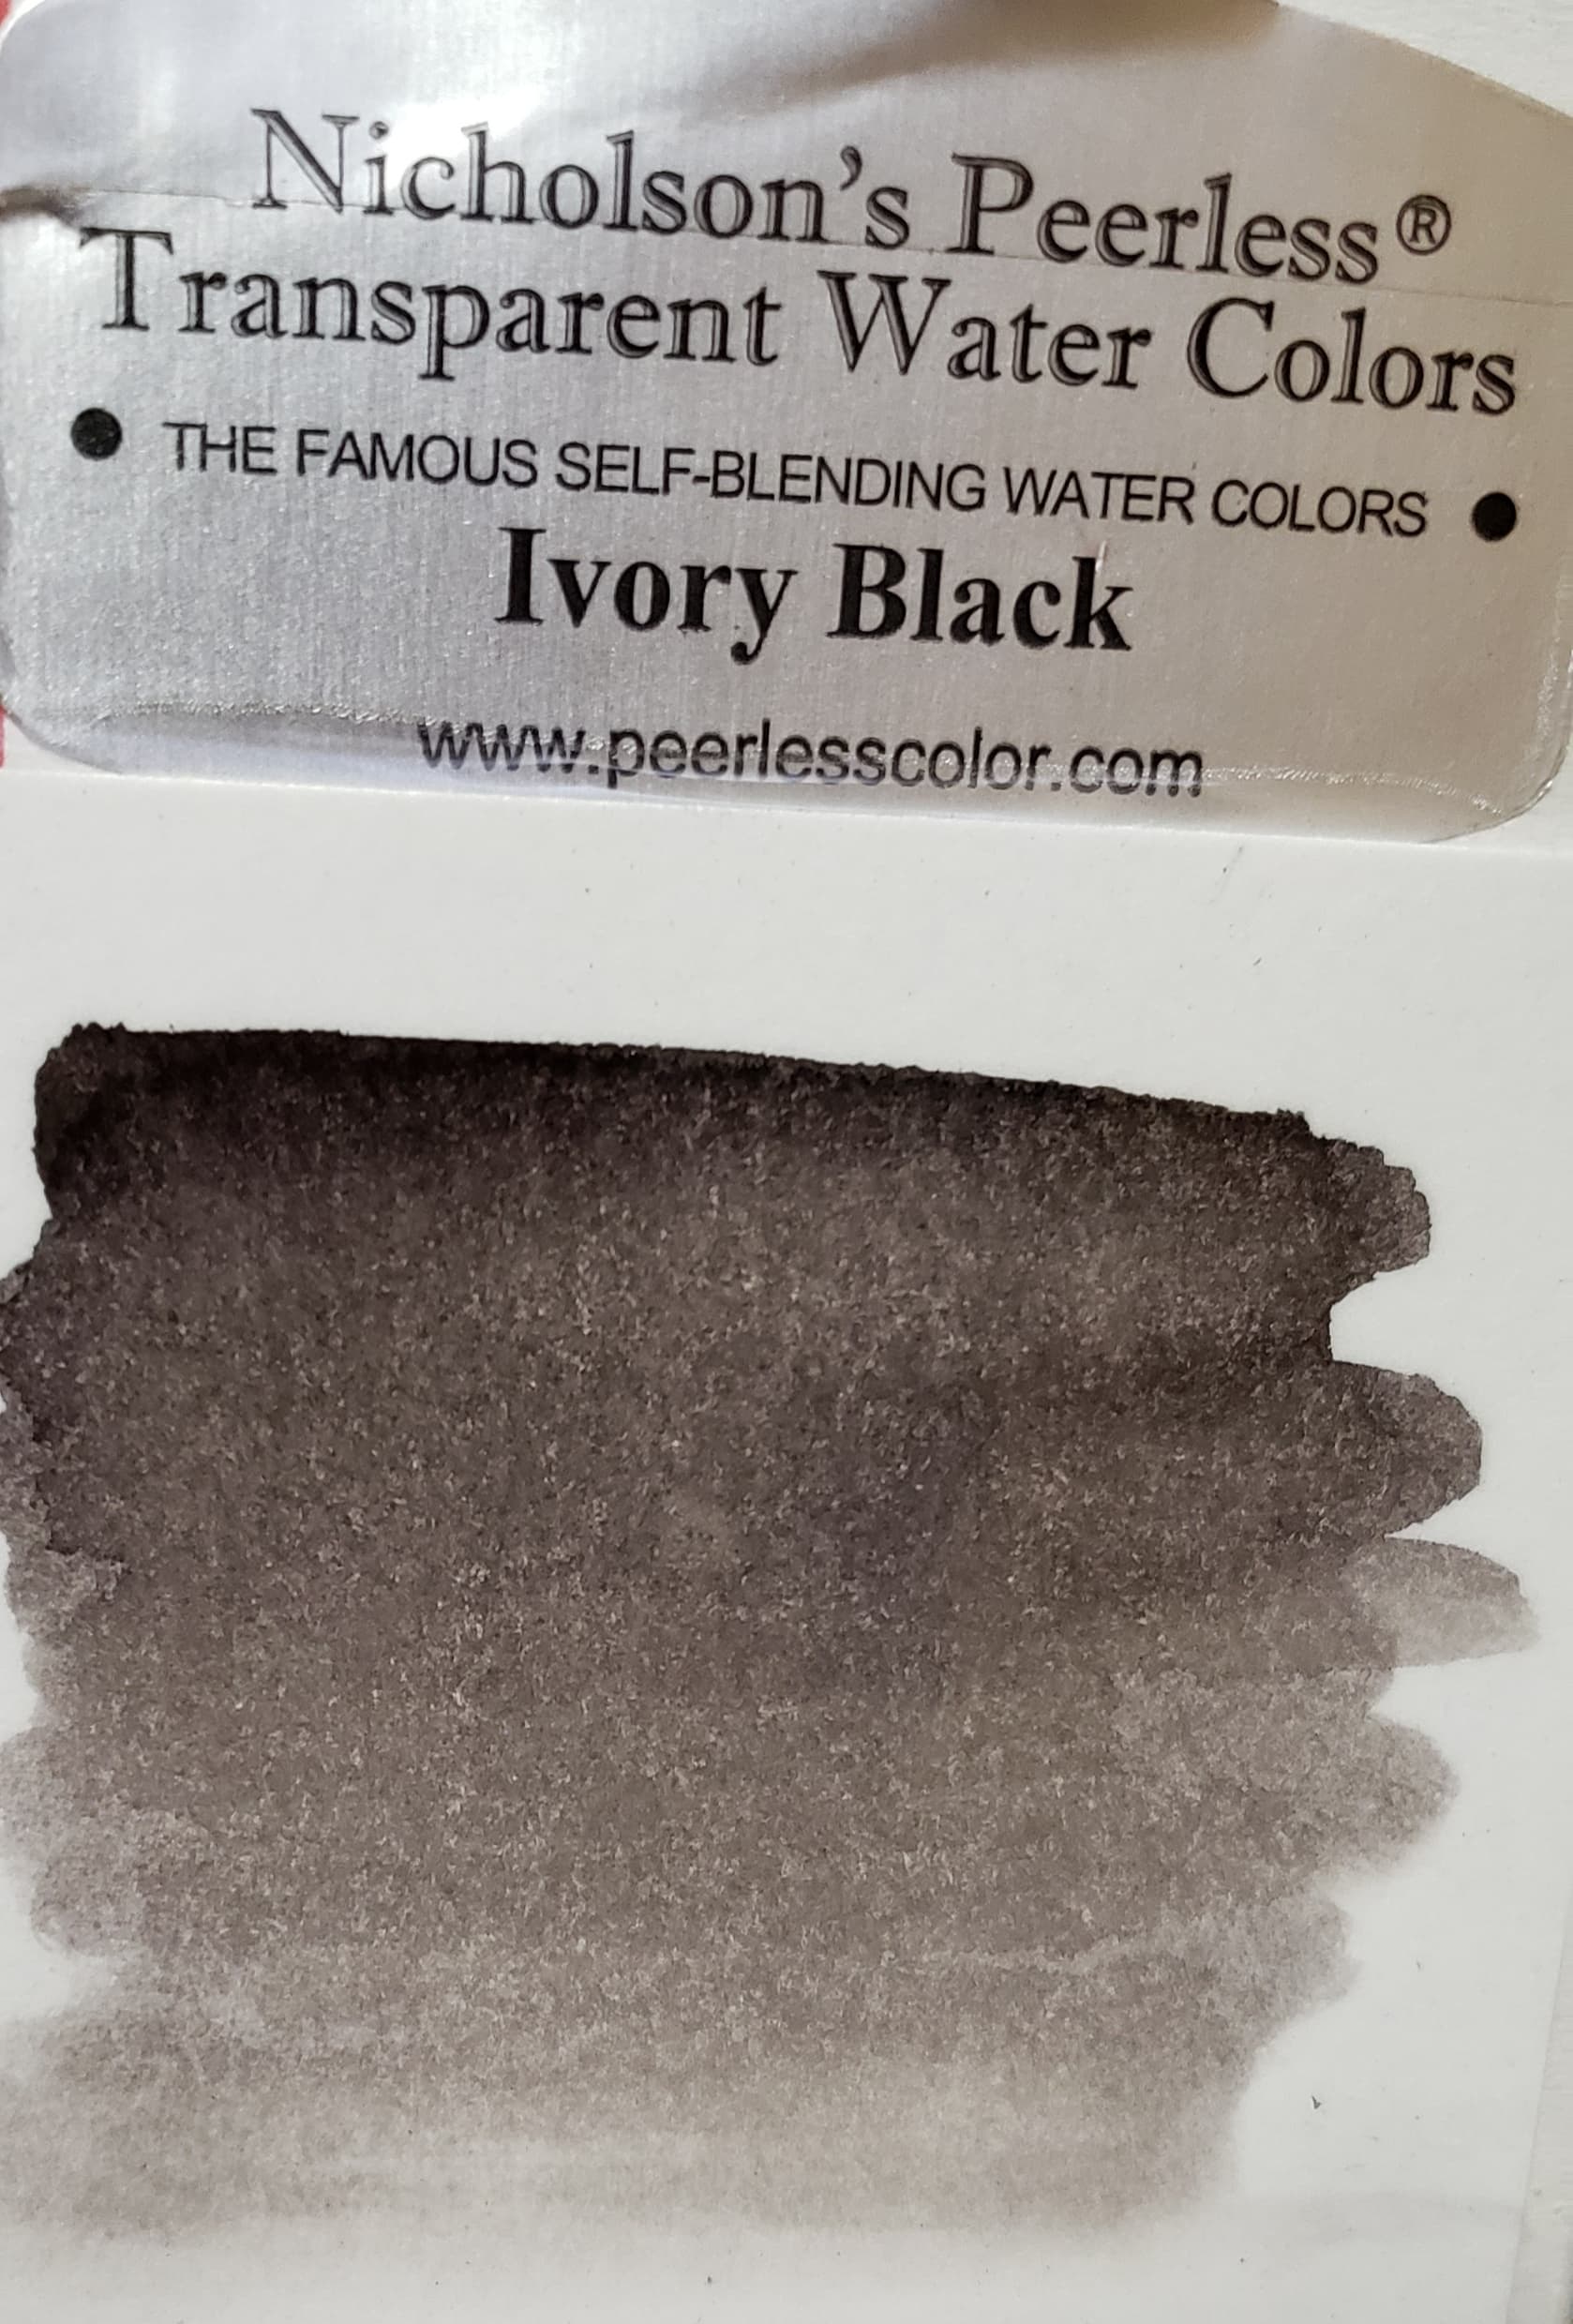 Ivory Black